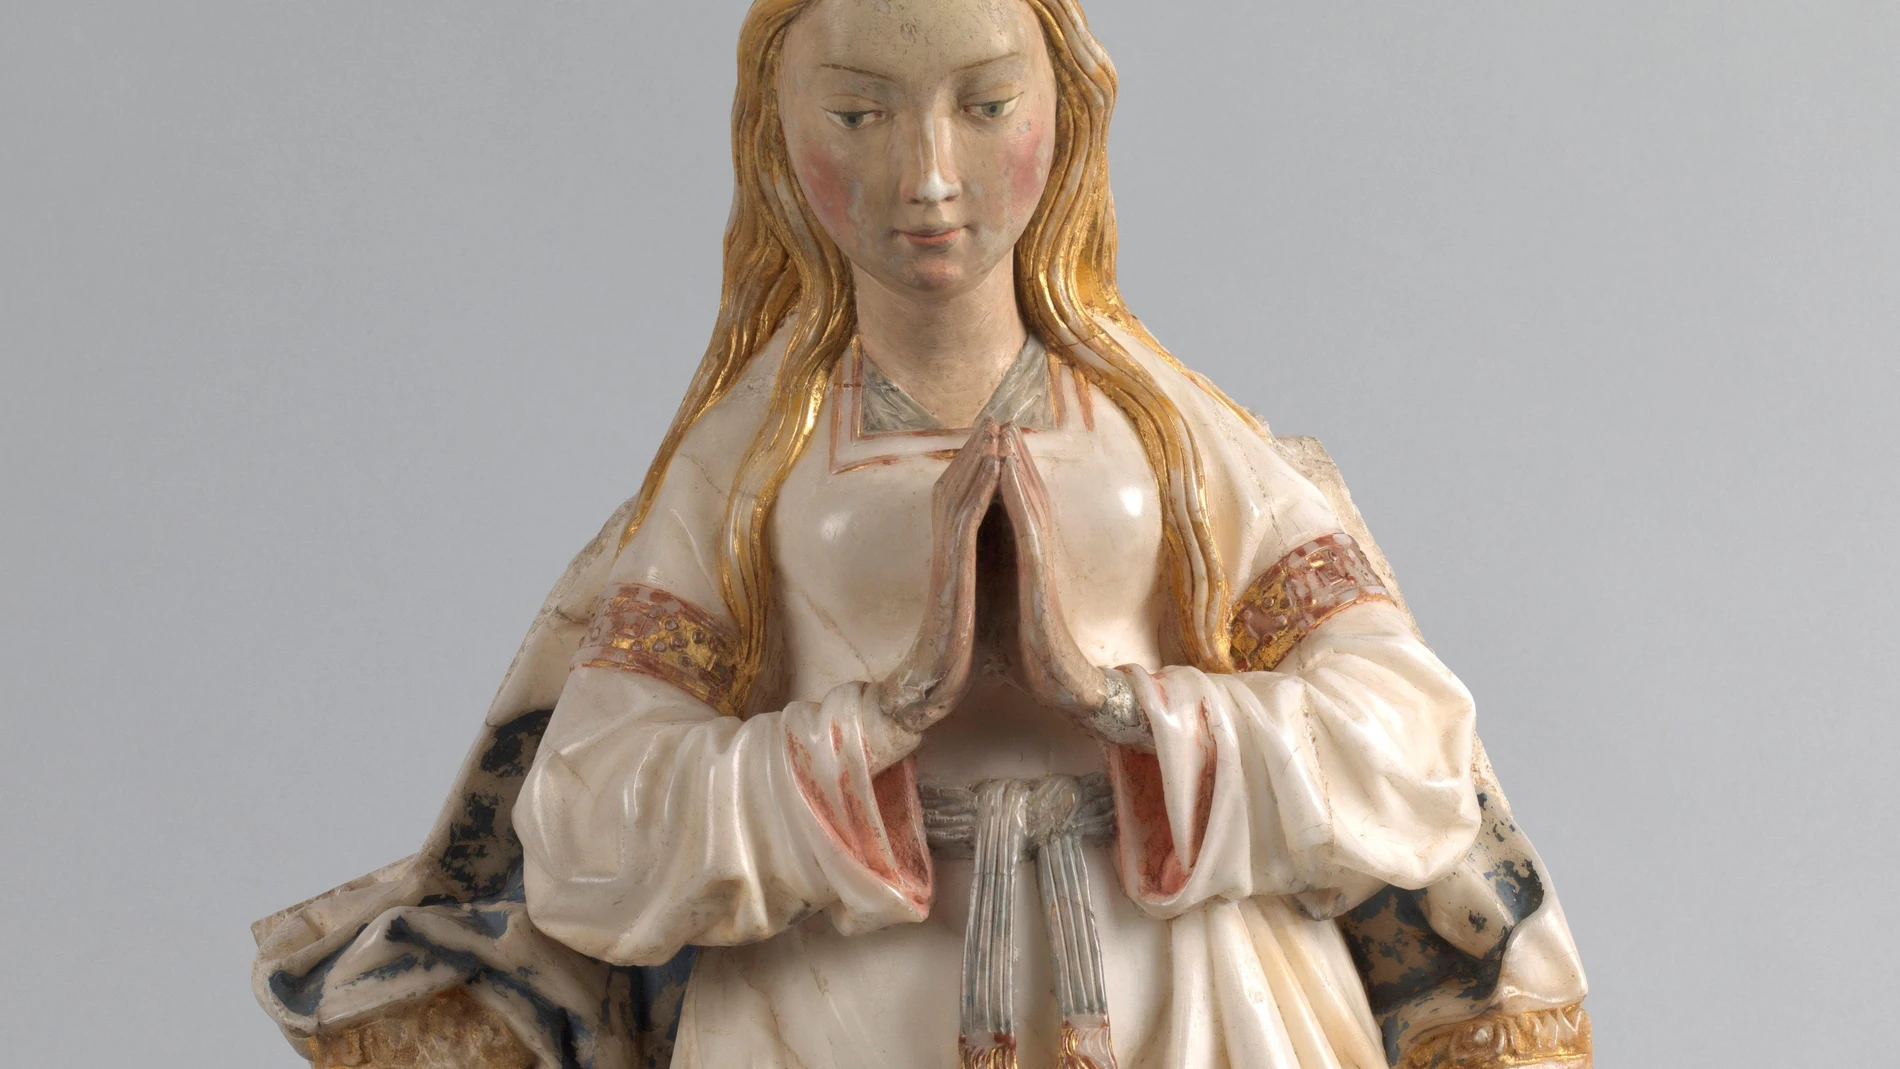 La escultura "Virgen orante entronizada"